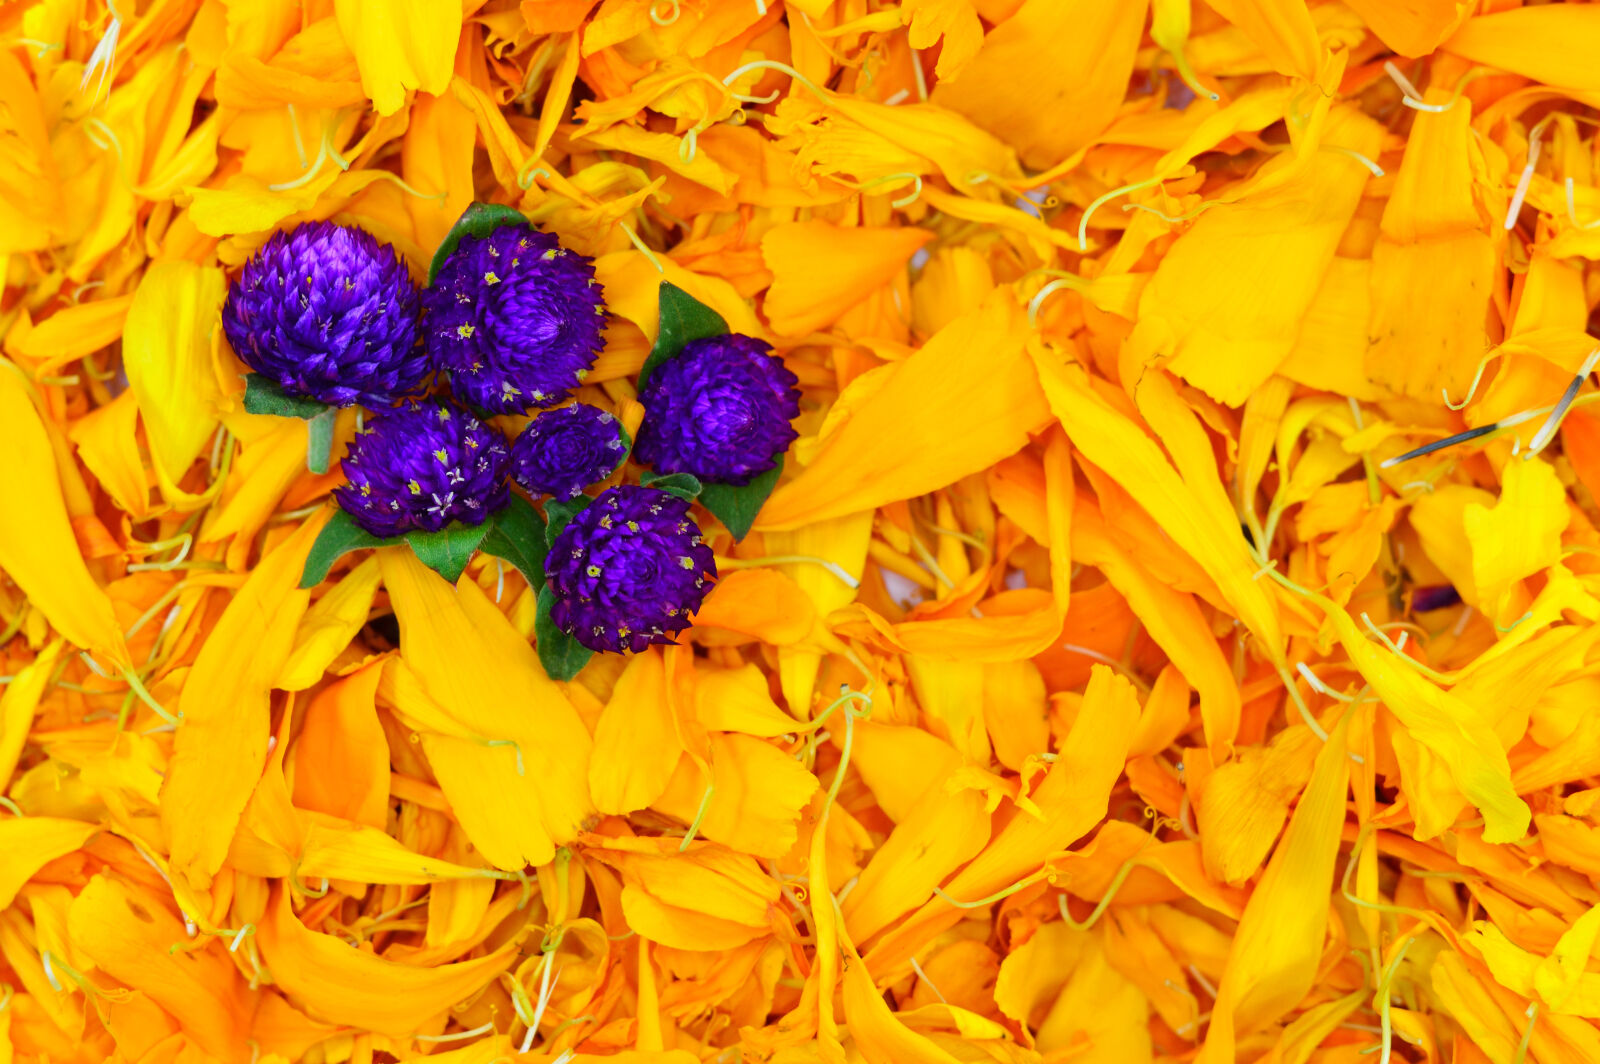 Nikon D3200 sample photo. Beauty, cempasuchil, colorful, floral photography